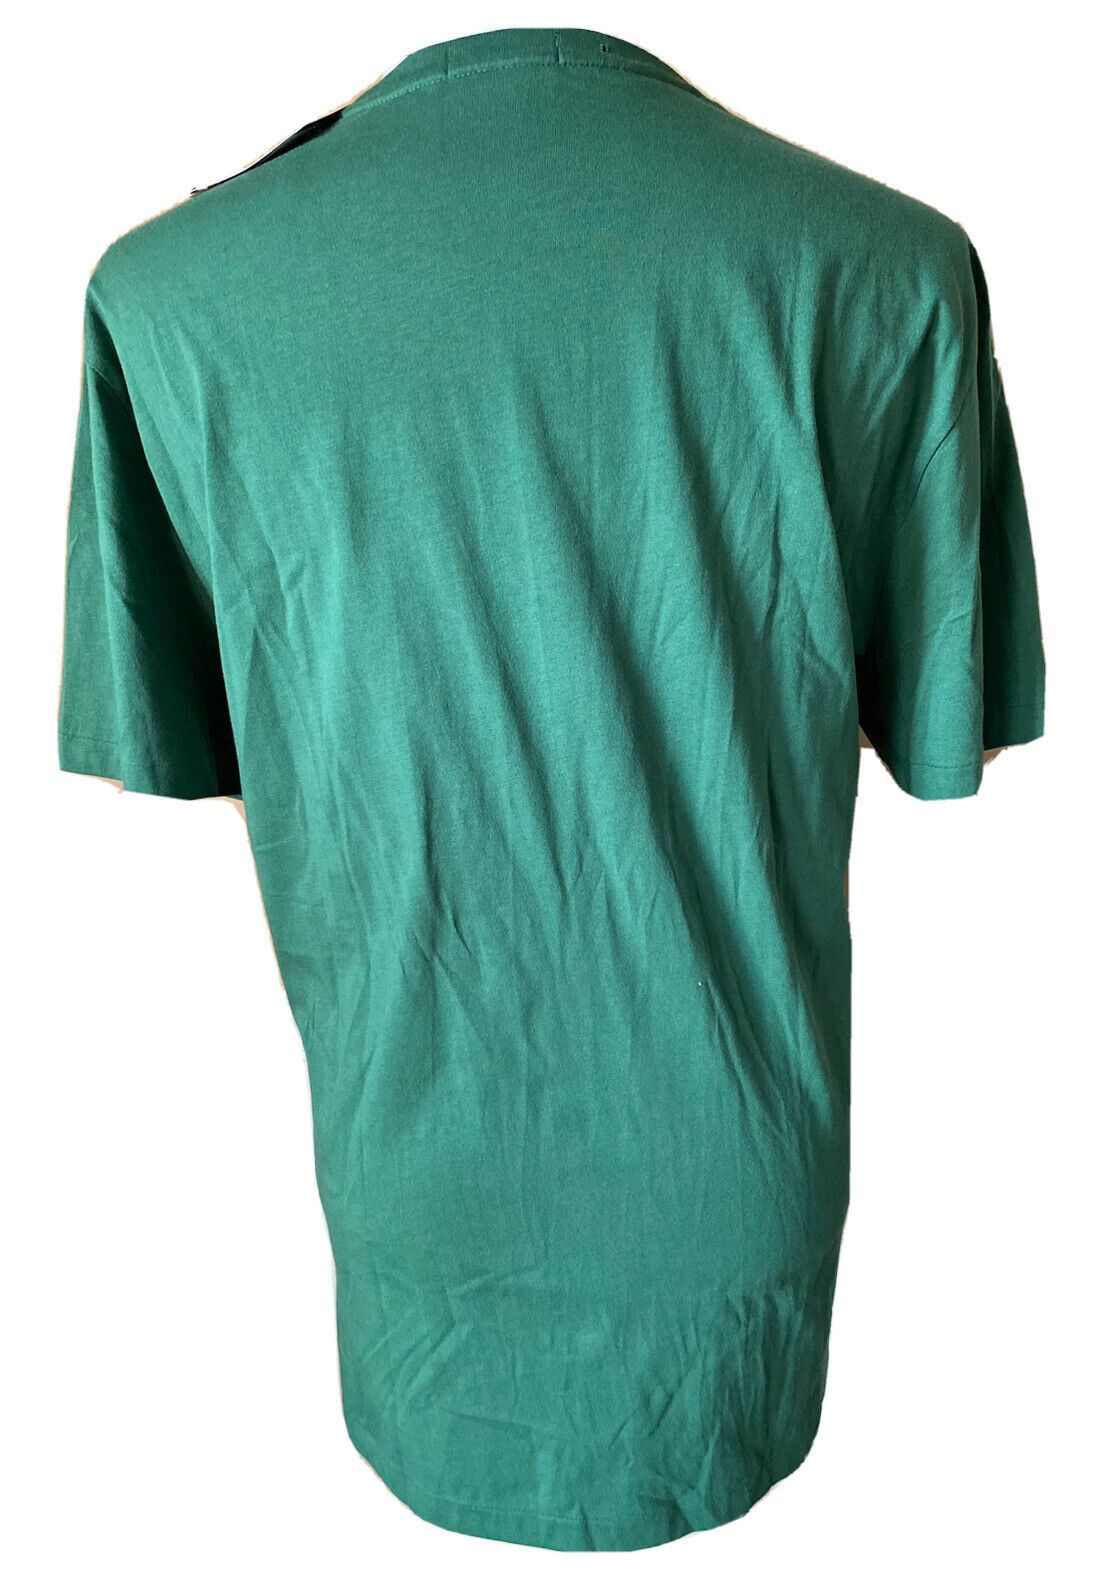 Neu mit Etikett: Polo Ralph Lauren Bear T-Shirt Grün 2XL/TTG